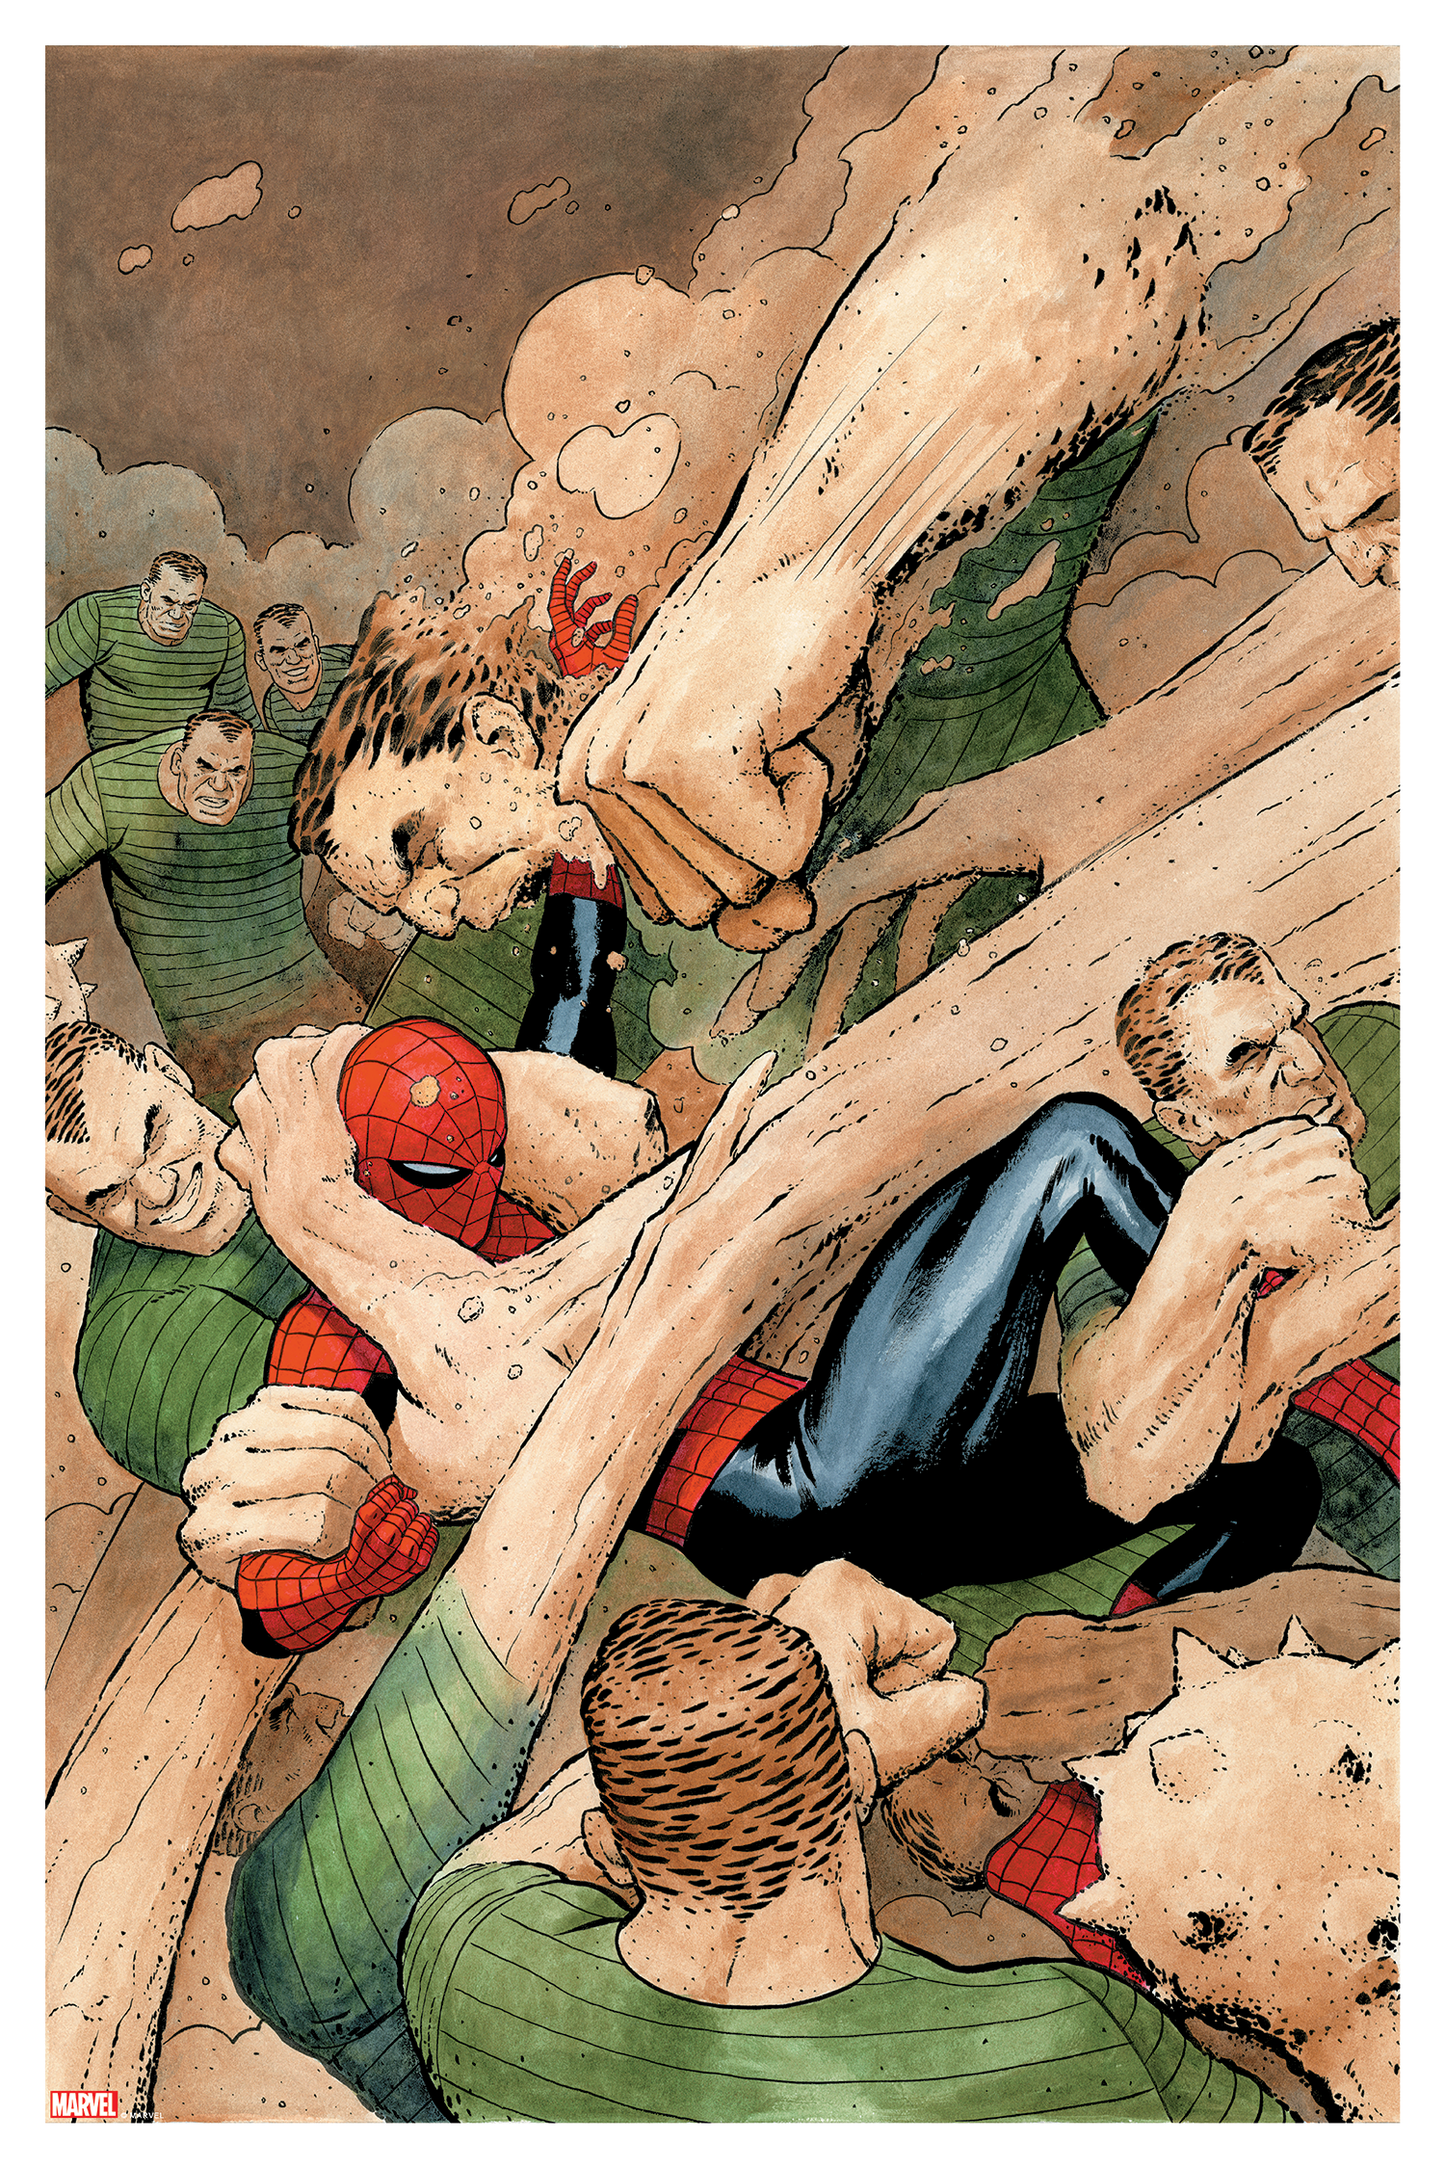 Paolo Rivera "Amazing Spider-Man #616"